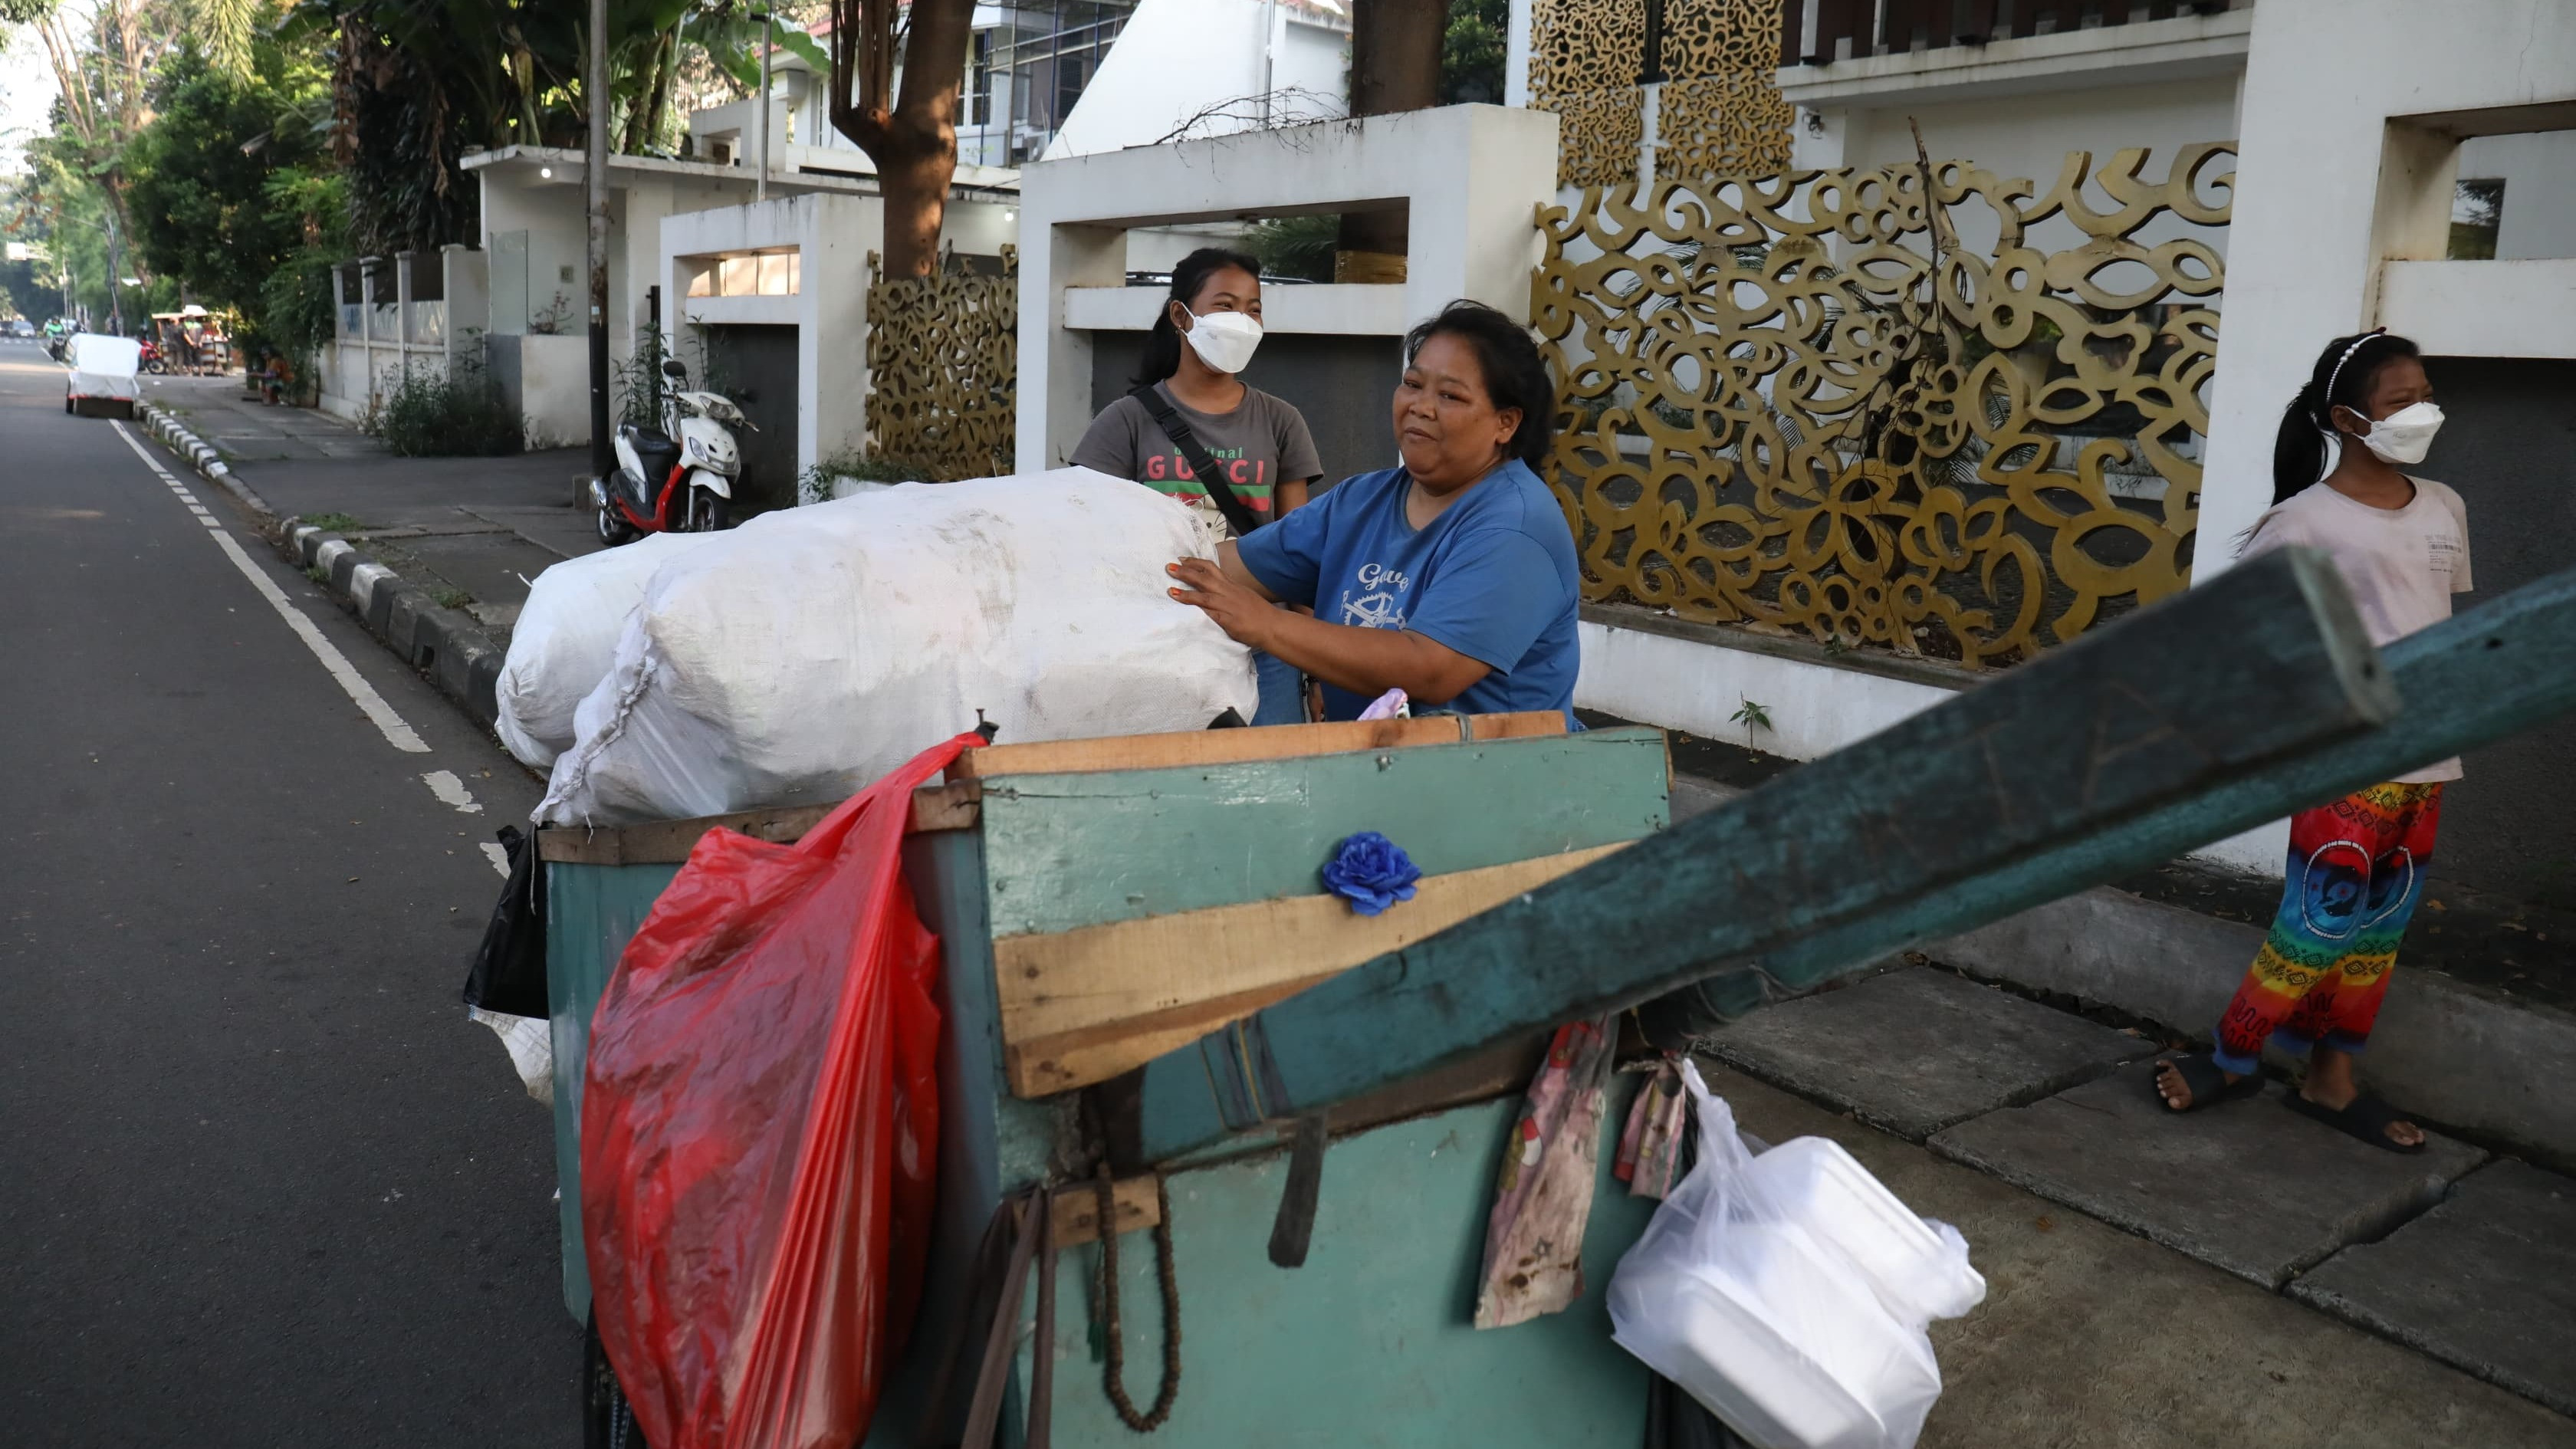 Menteri Sosial Tri Rismaharini memberikan bantuan modal usaha dan tempat tinggal layak kepada para pemulung di Jalan Sukabumi, Menteng, Jakarta Pusat pada Kamis pagi (20/6).